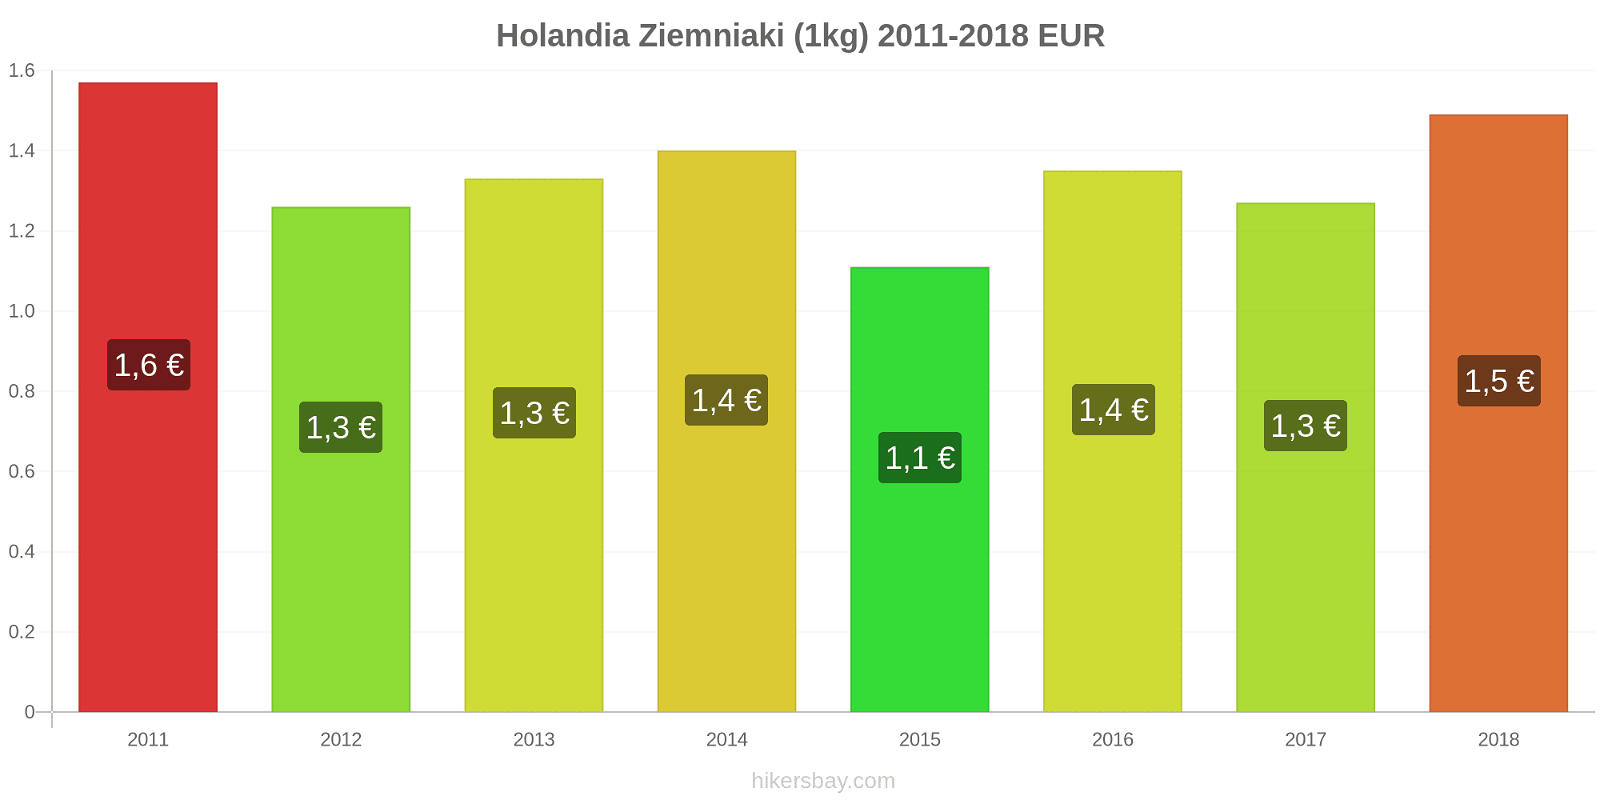 Holandia zmiany cen Ziemniaki (1kg) hikersbay.com